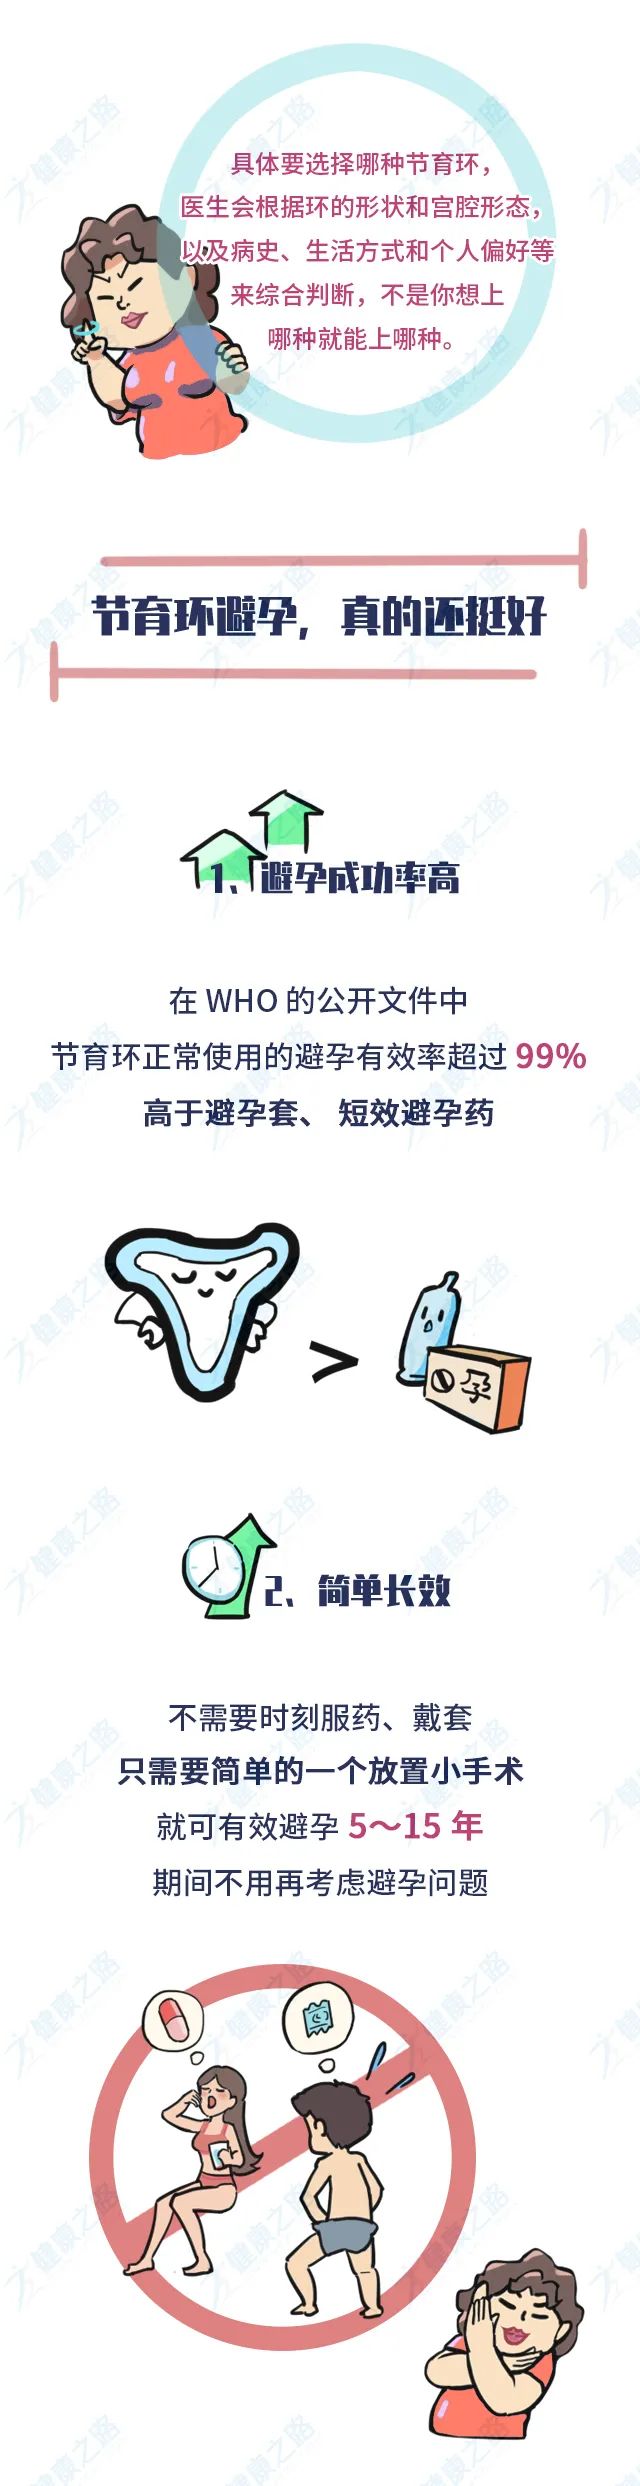 千万中国女性身体里的节育环,到底是避孕神器,还是"定时炸弹?